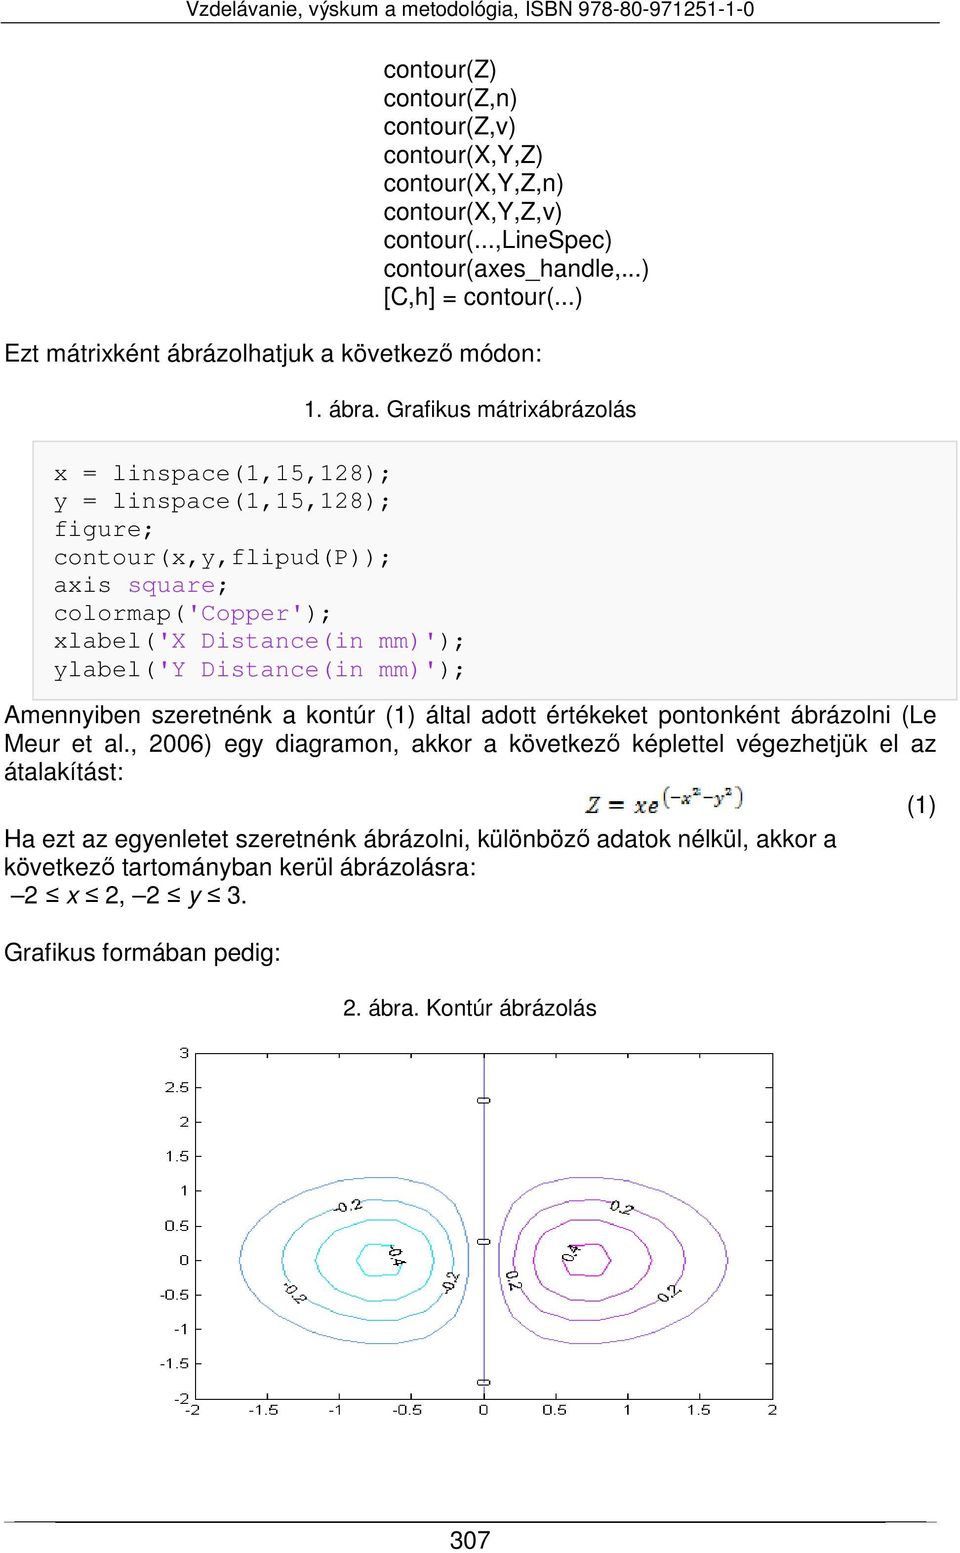 Grafikus mátrixábrázolás x = linspace(1,15,128); y = linspace(1,15,128); figure; contour(x,y,flipud(p)); axis square; colormap('copper'); xlabel('x Distance(in mm)'); ylabel('y Distance(in